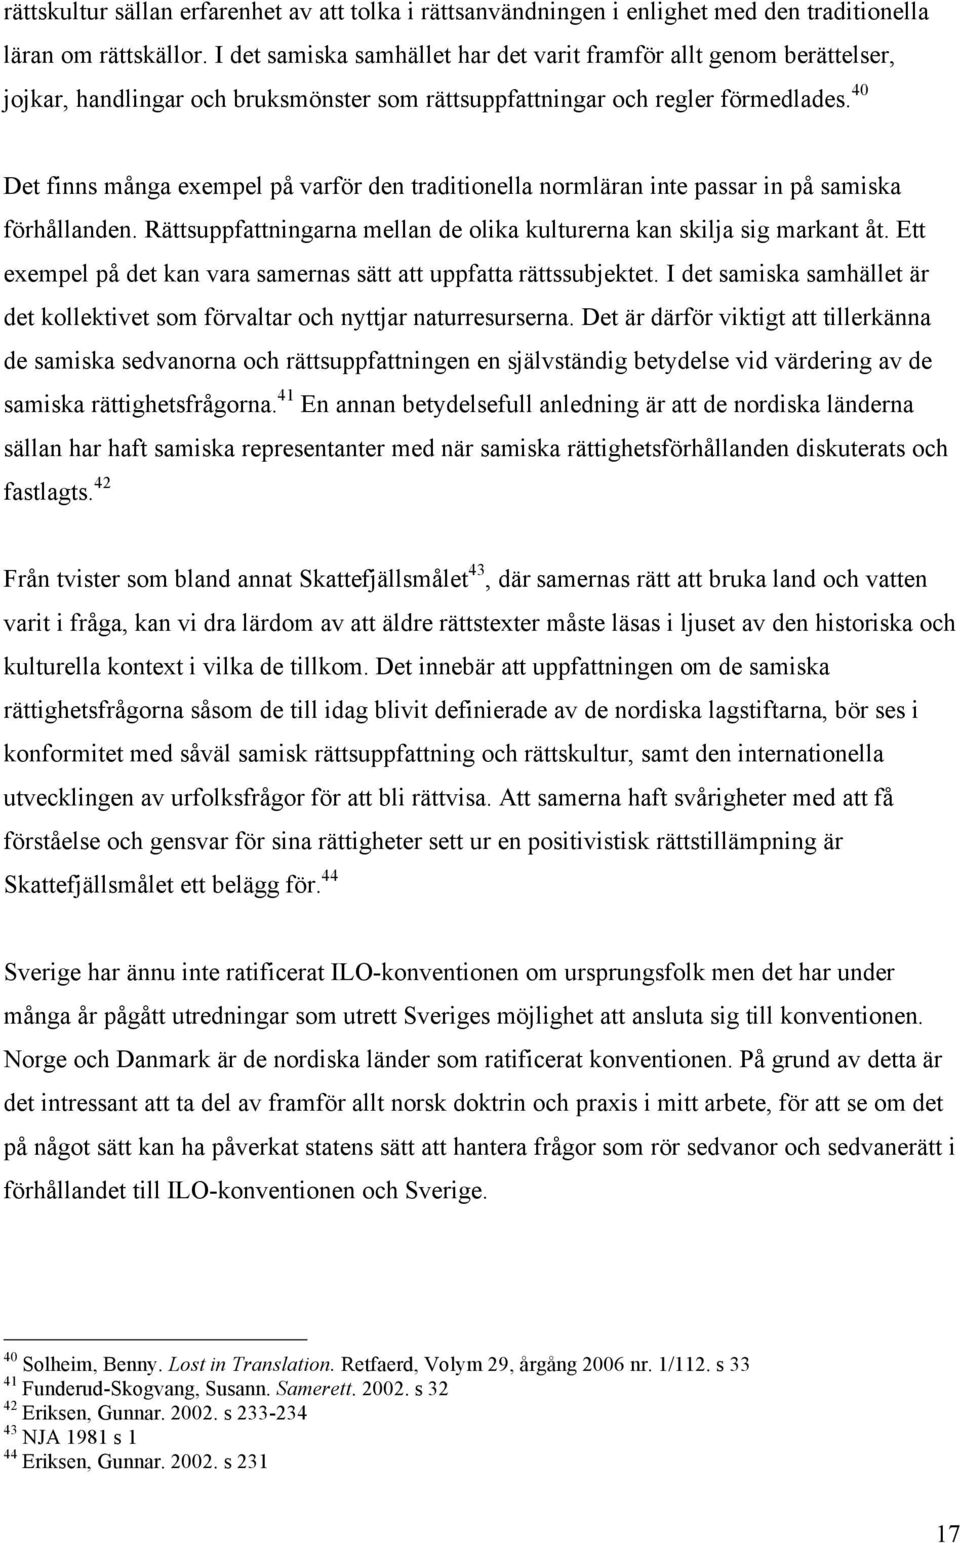 40 Det finns många exempel på varför den traditionella normläran inte passar in på samiska förhållanden. Rättsuppfattningarna mellan de olika kulturerna kan skilja sig markant åt.